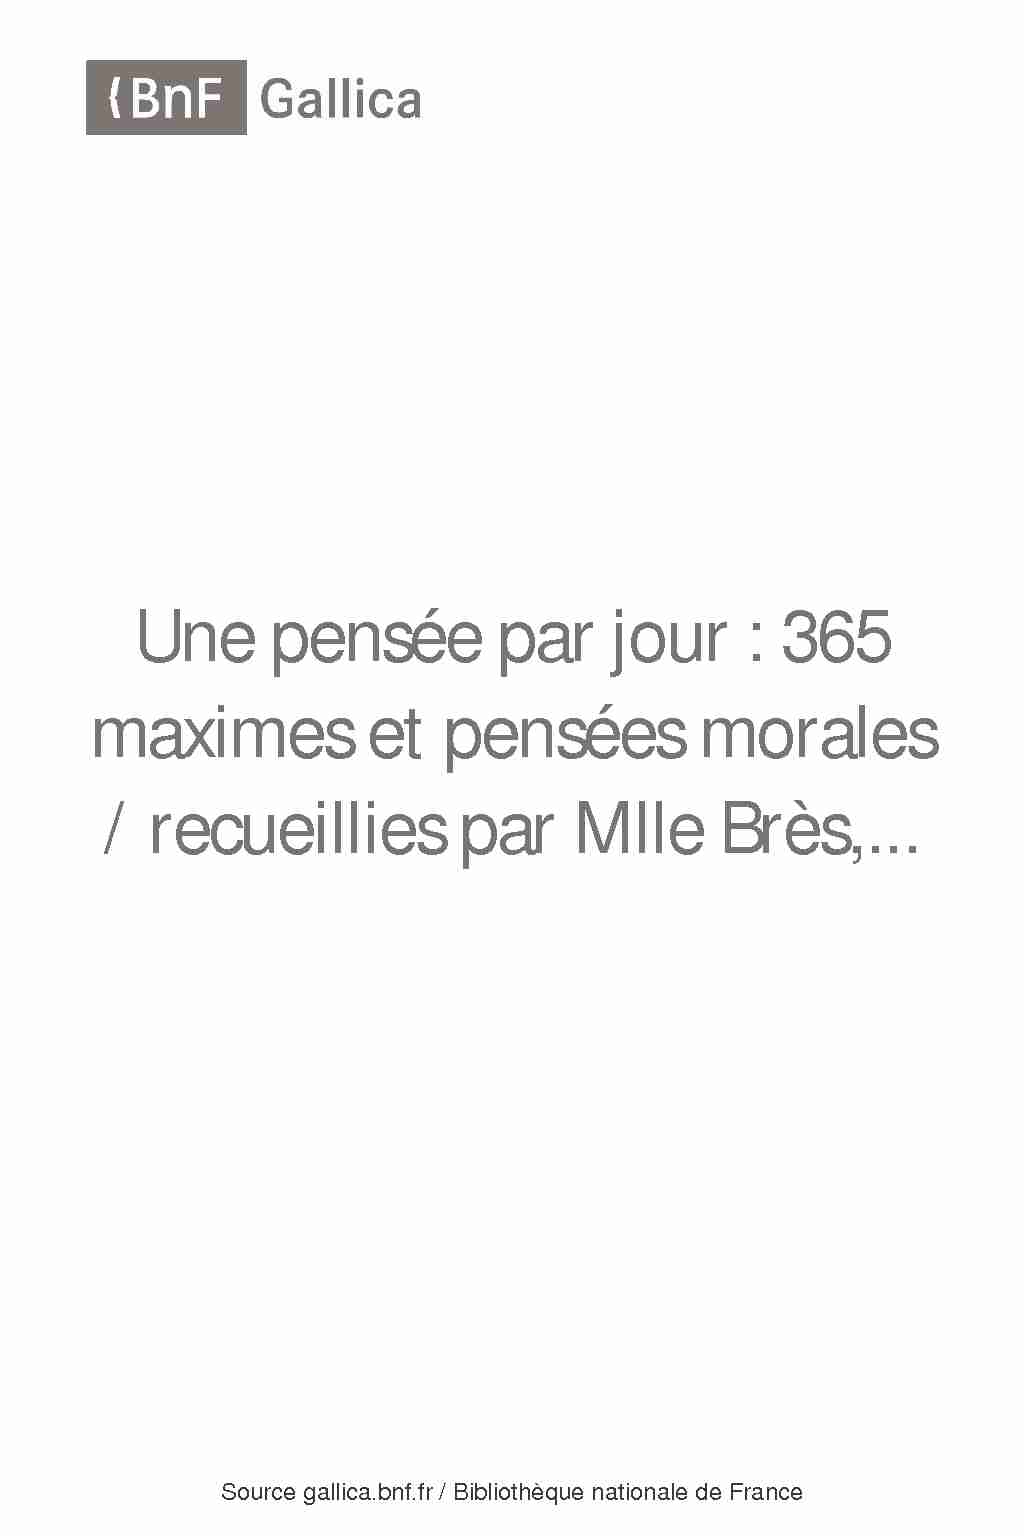 [PDF] 365 maximes et pensées morales / recueillies par Mlle Brès - Gallica